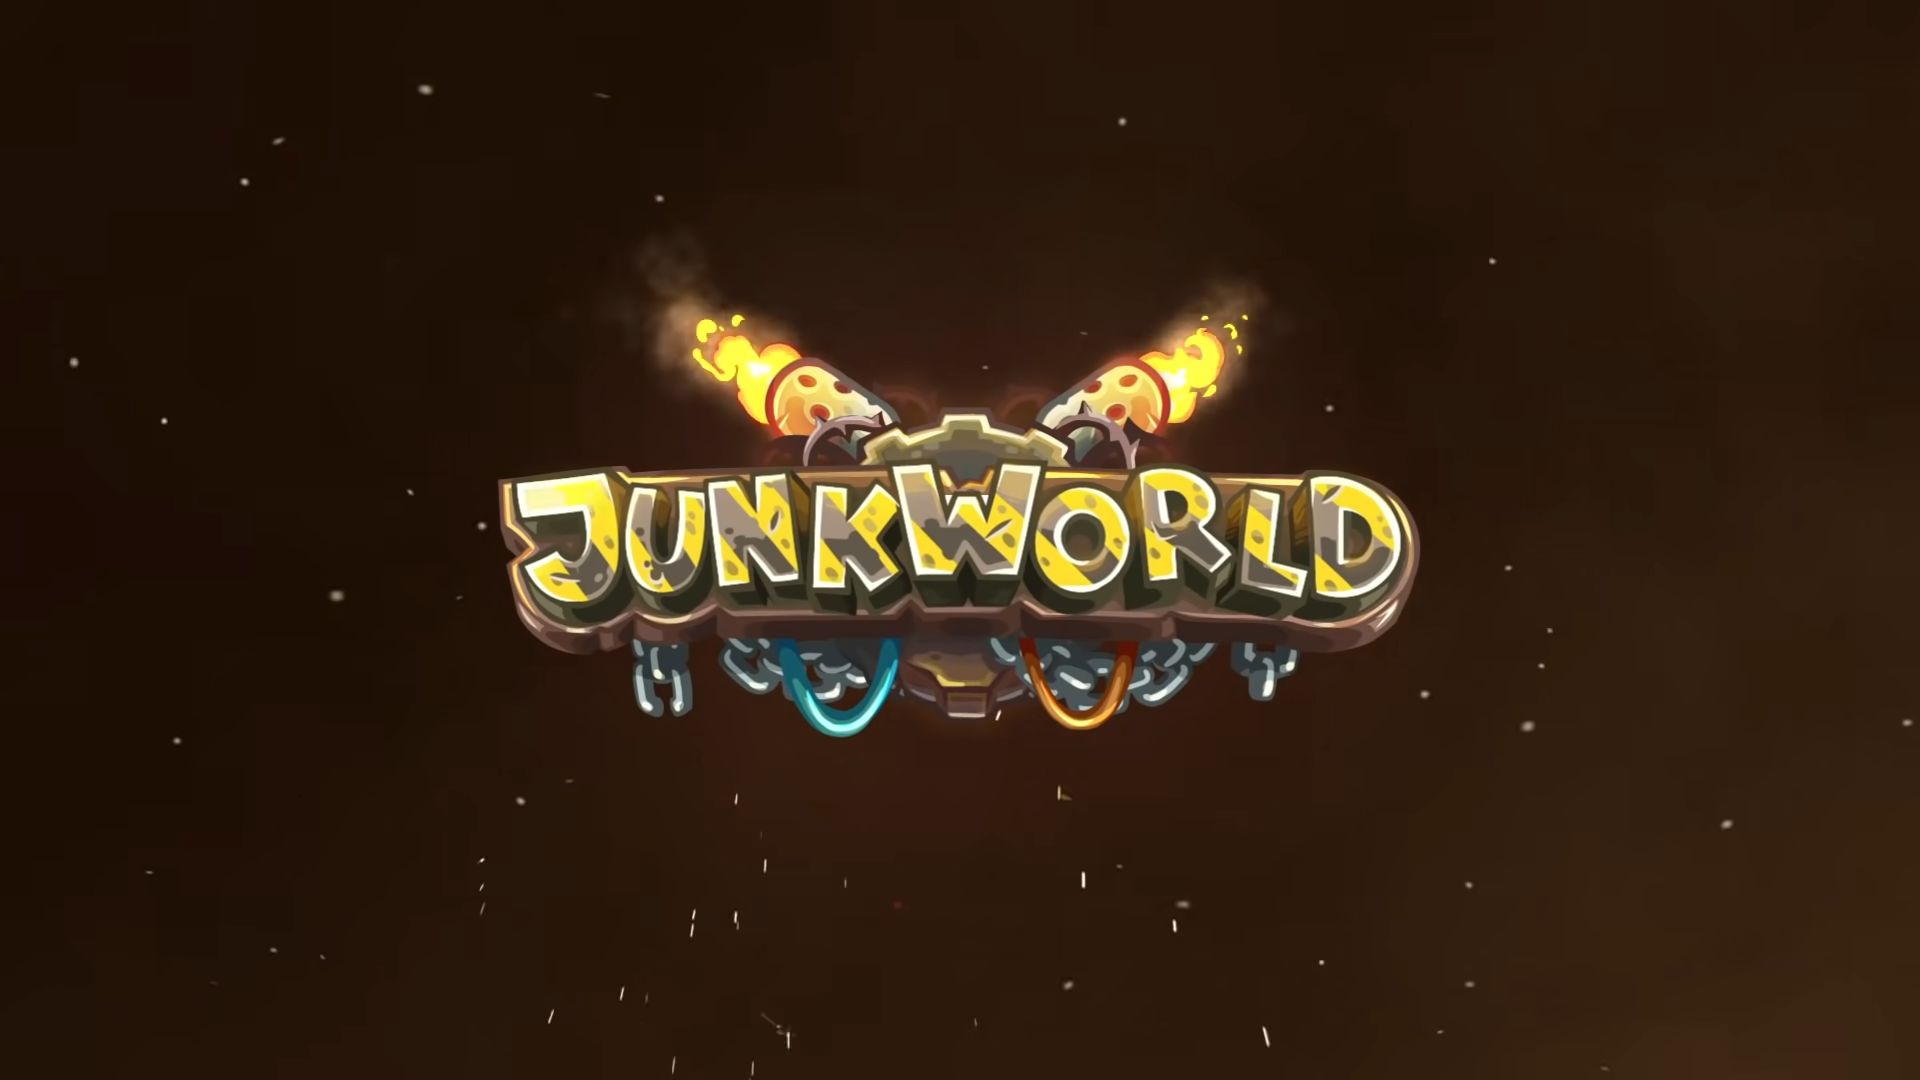 Junkworld TD free download